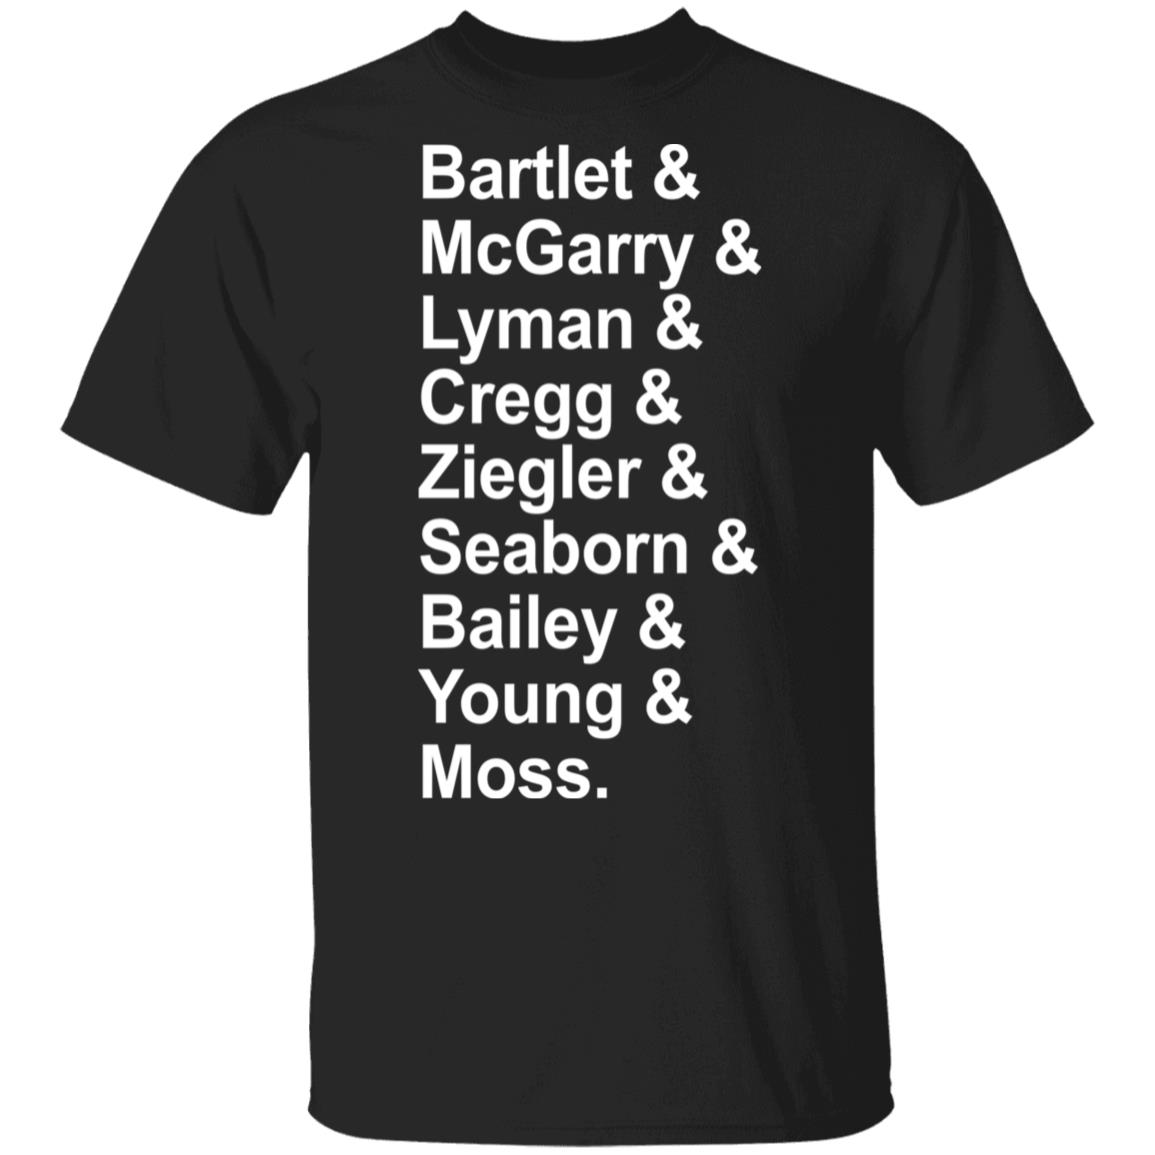 Bartlet McGarry Lyman Cregg Ziegler Seaborn Bailey Young Moss shirt